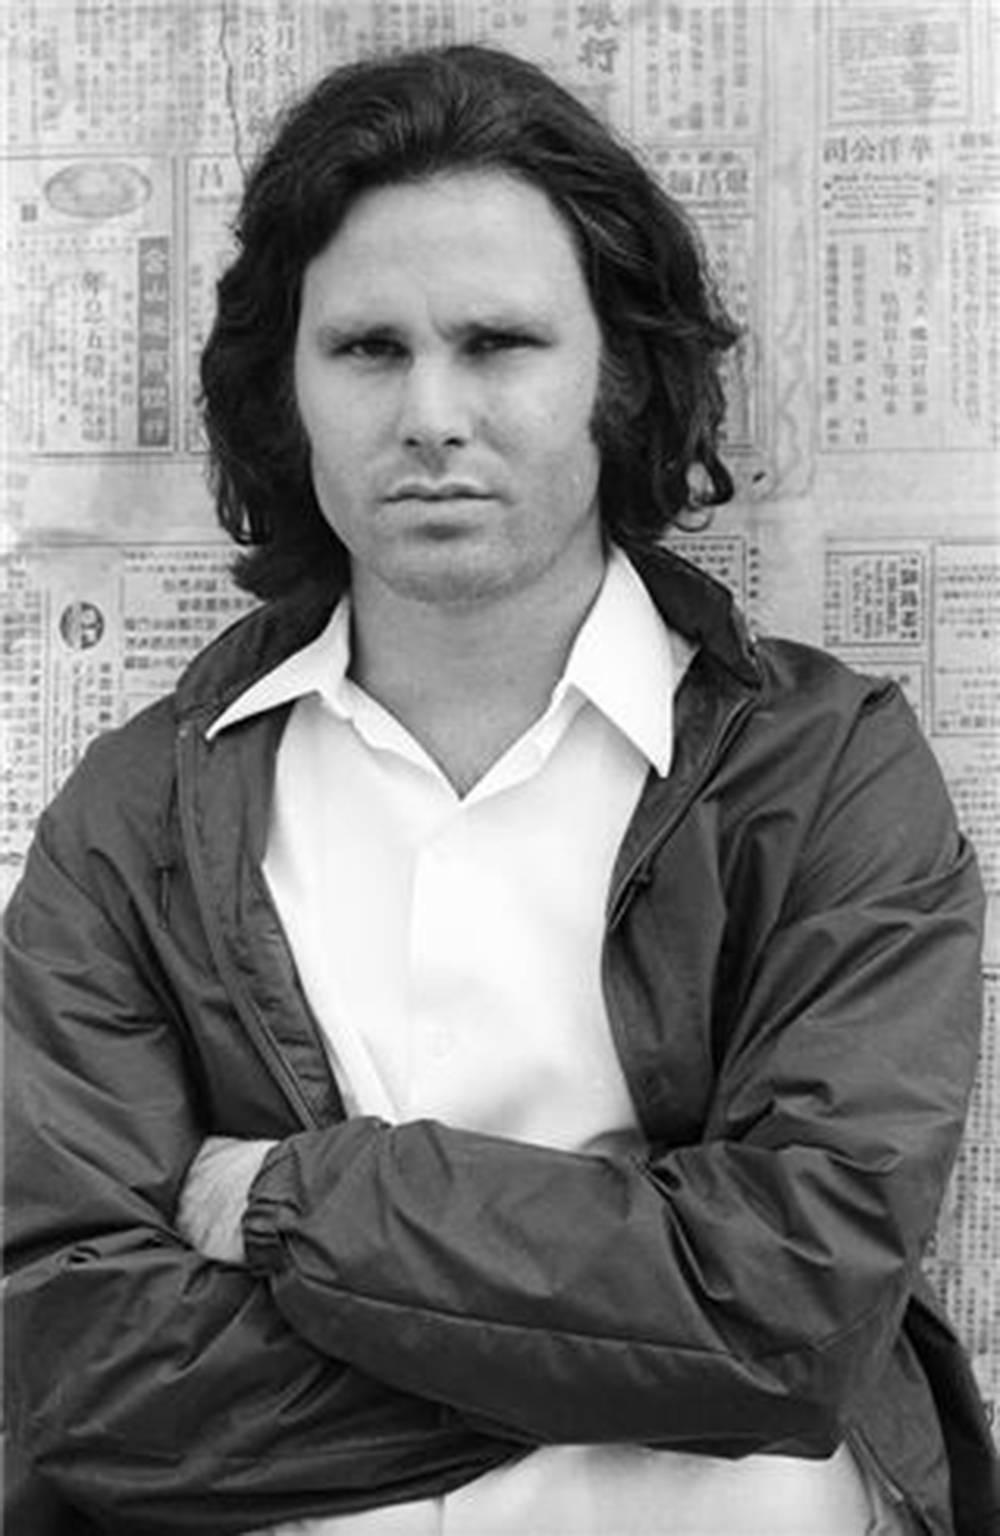 Henry Diltz Black and White Photograph – Jim Morrison, Venedig, Kalifornien, 1969